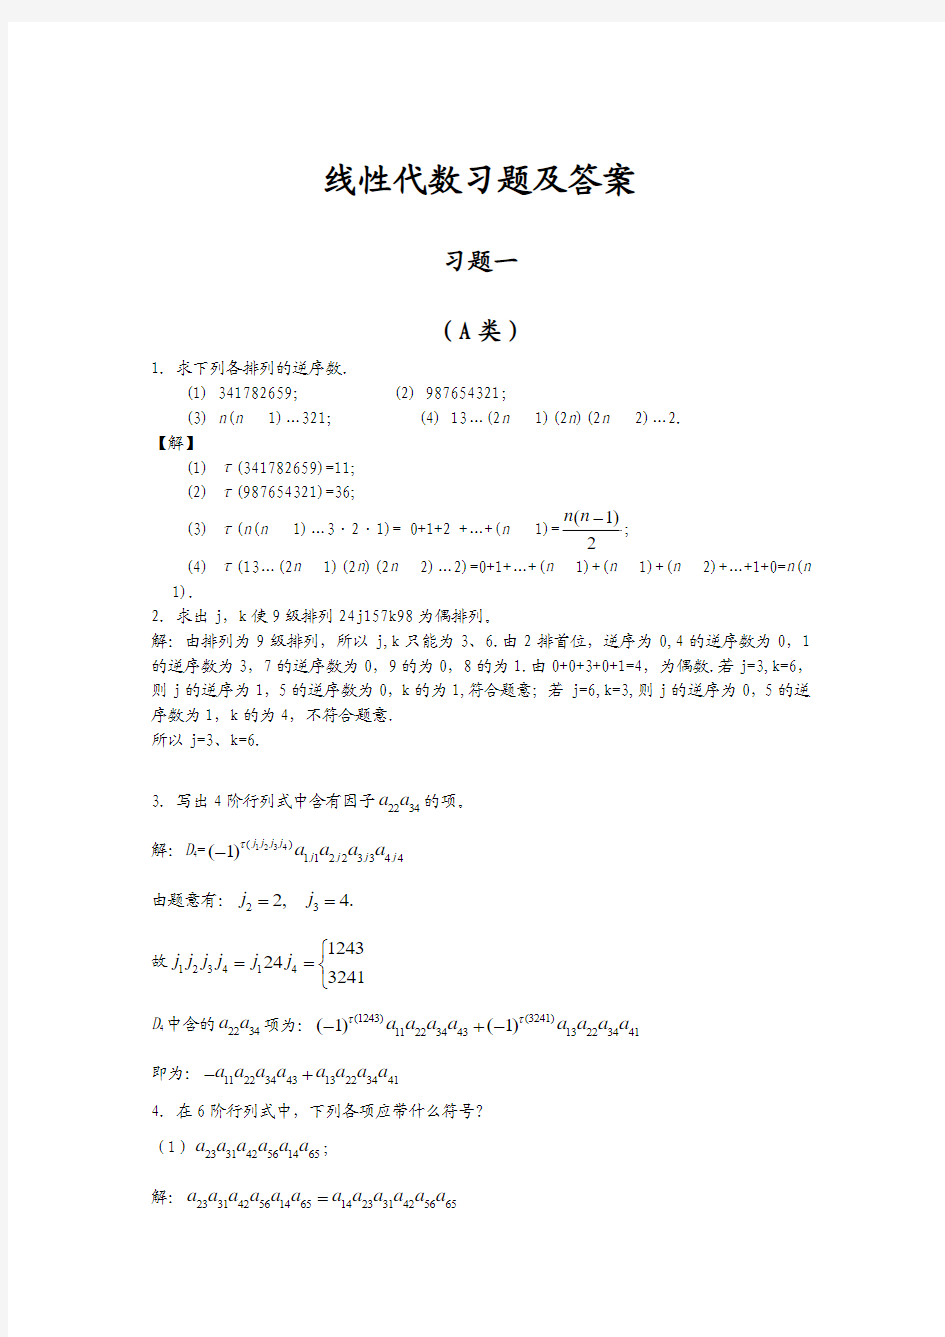 线性习题答案(1)线性代数答案 北京邮电大学出版社 戴斌祥主编